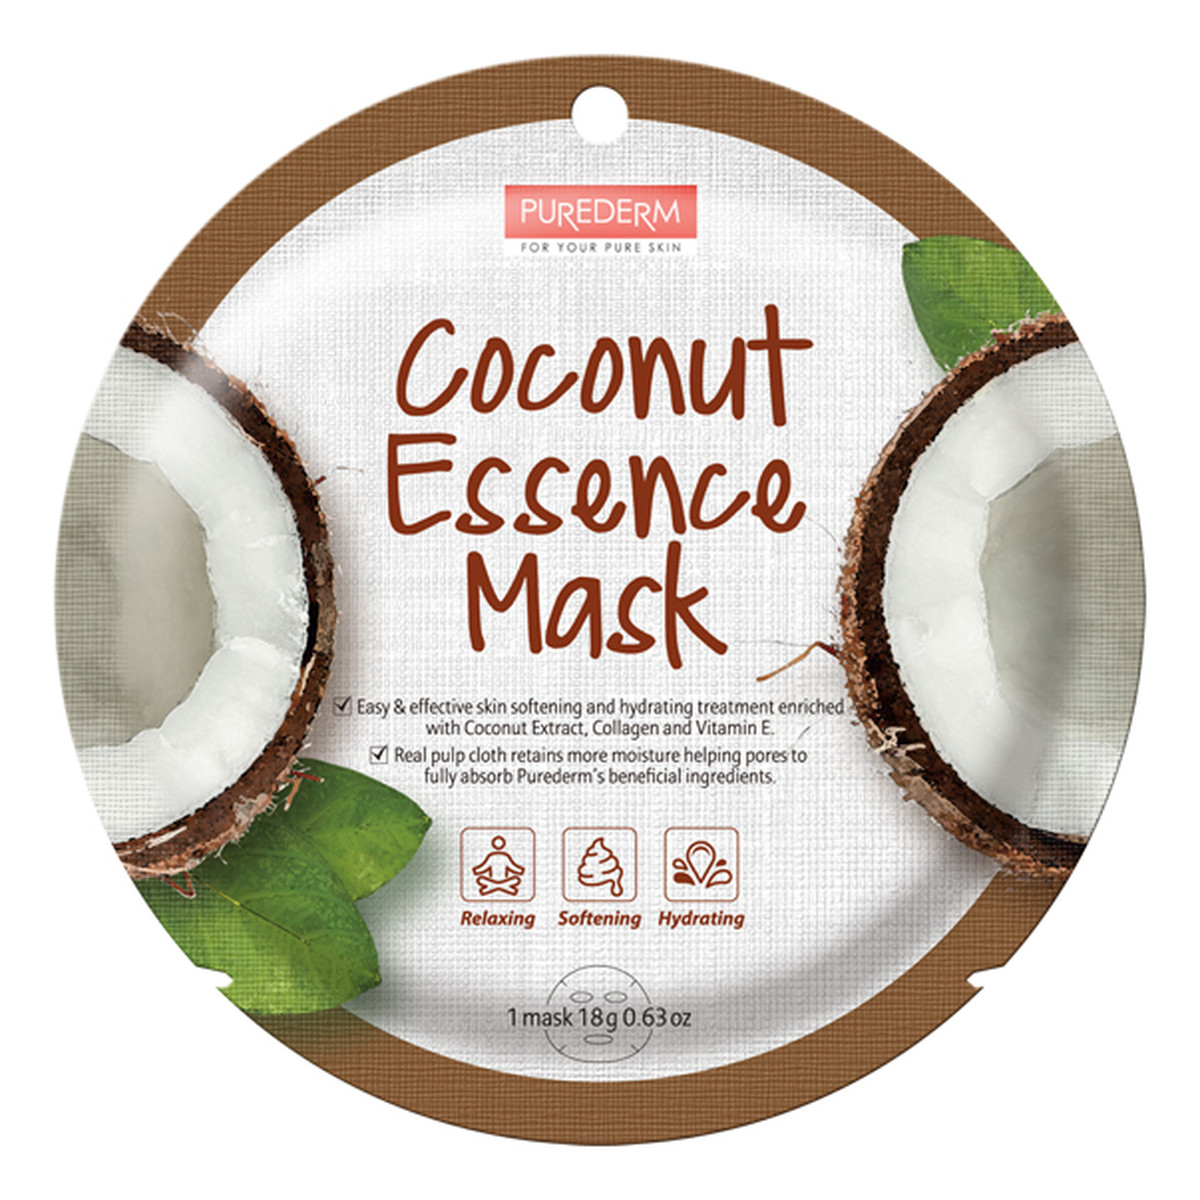 Purederm Coconut Essence Mask maseczka w płacie Kokos 18g